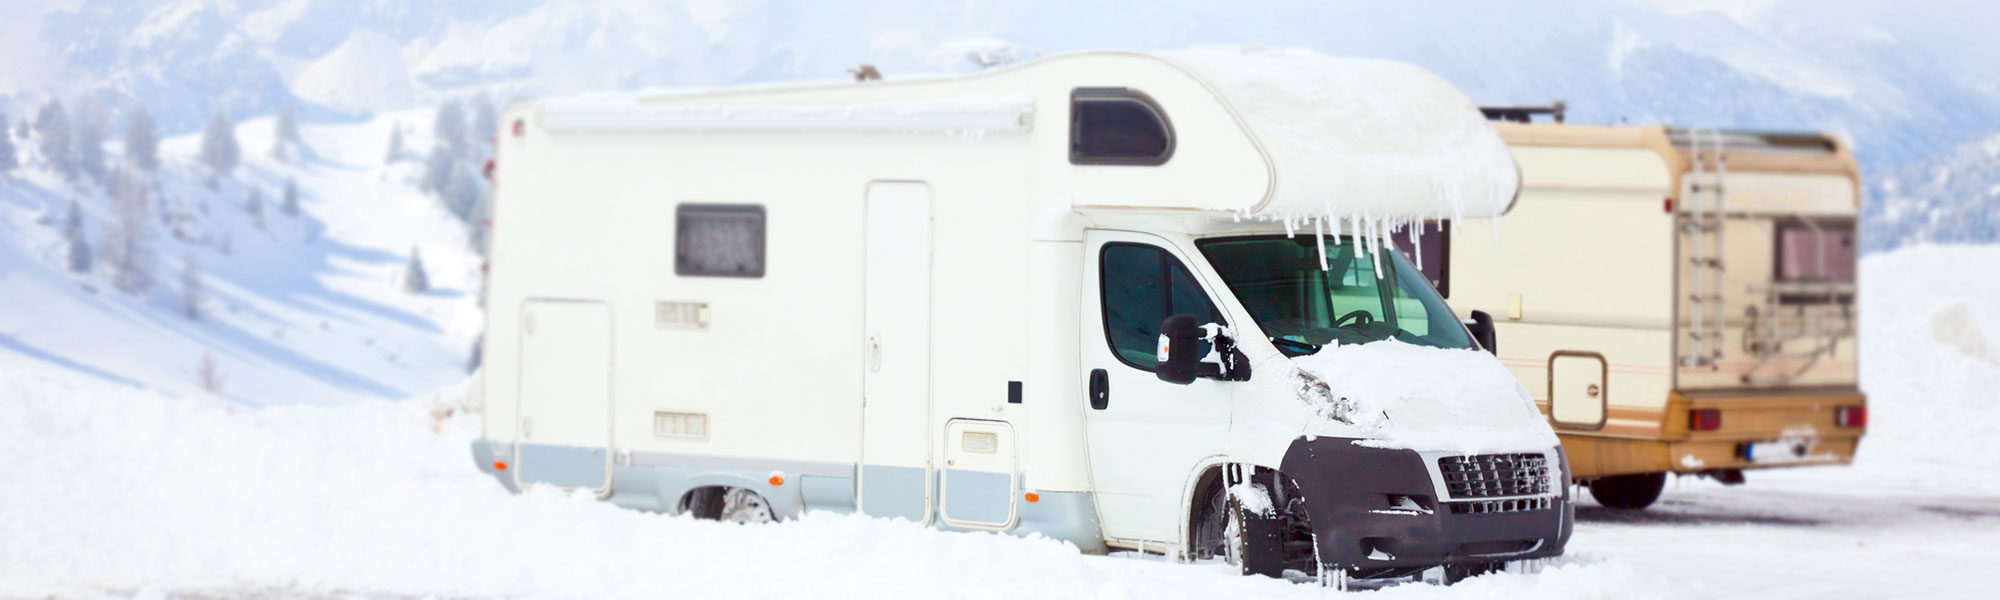 Wintercamping: Für mehr Komfort das Wohnmobil abdichten